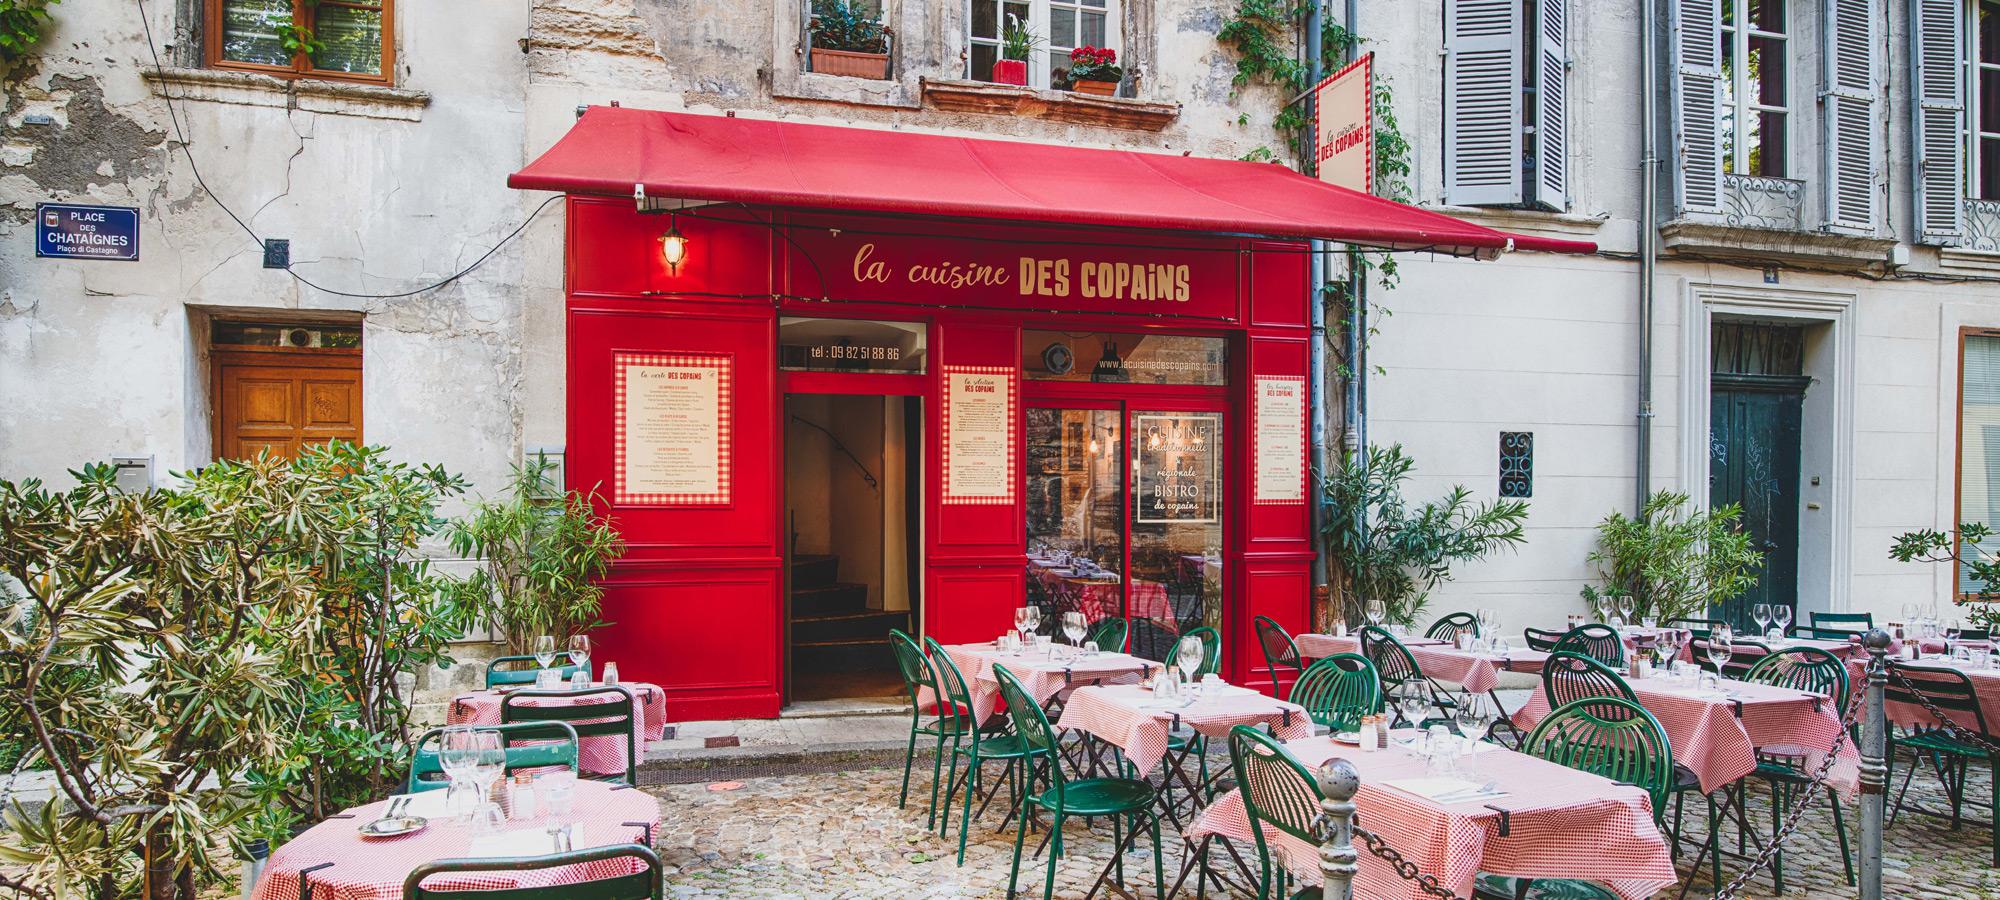 Restaurant traditionnel - Avignon